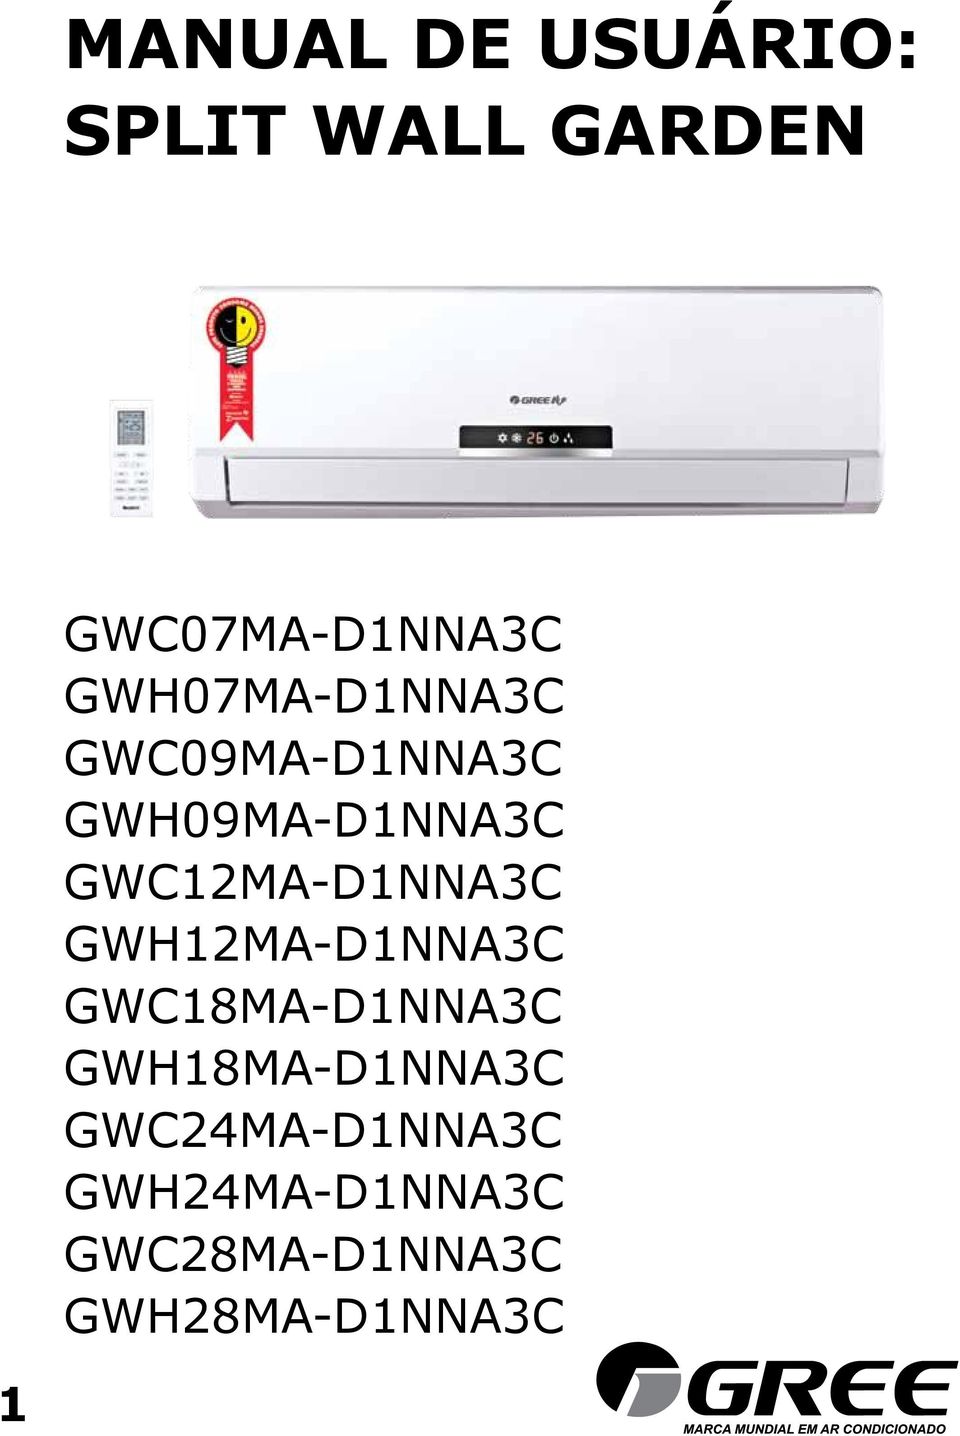 GWC12MA-D1NNA3C GWH12MA-D1NNA3C GWC18MA-D1NNA3C